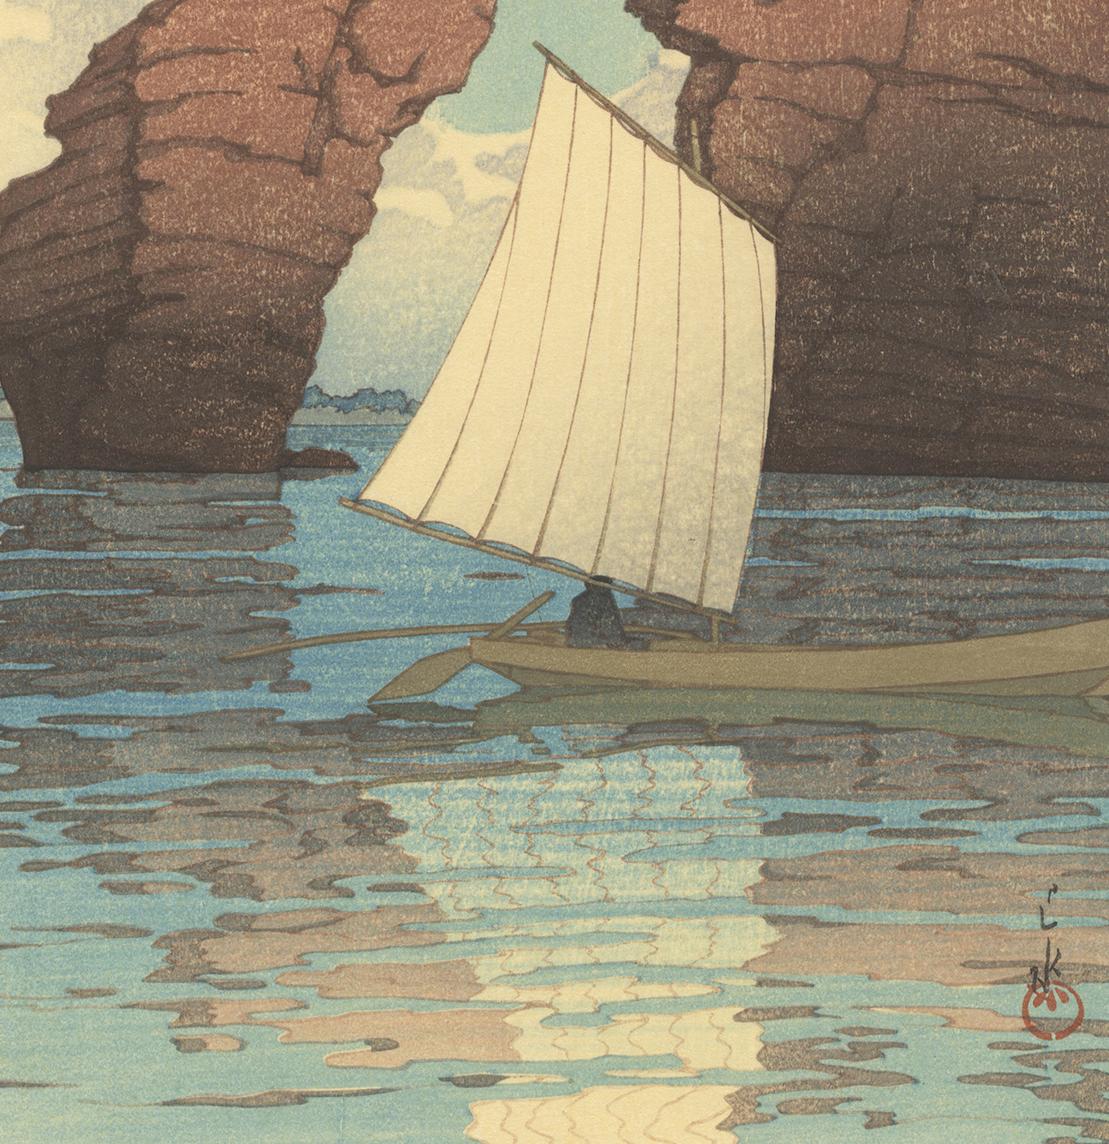 Natural Rock Arch w/ Sailing Boat at Sea, Kawase Hasui, Japanese Woodblock Print 1